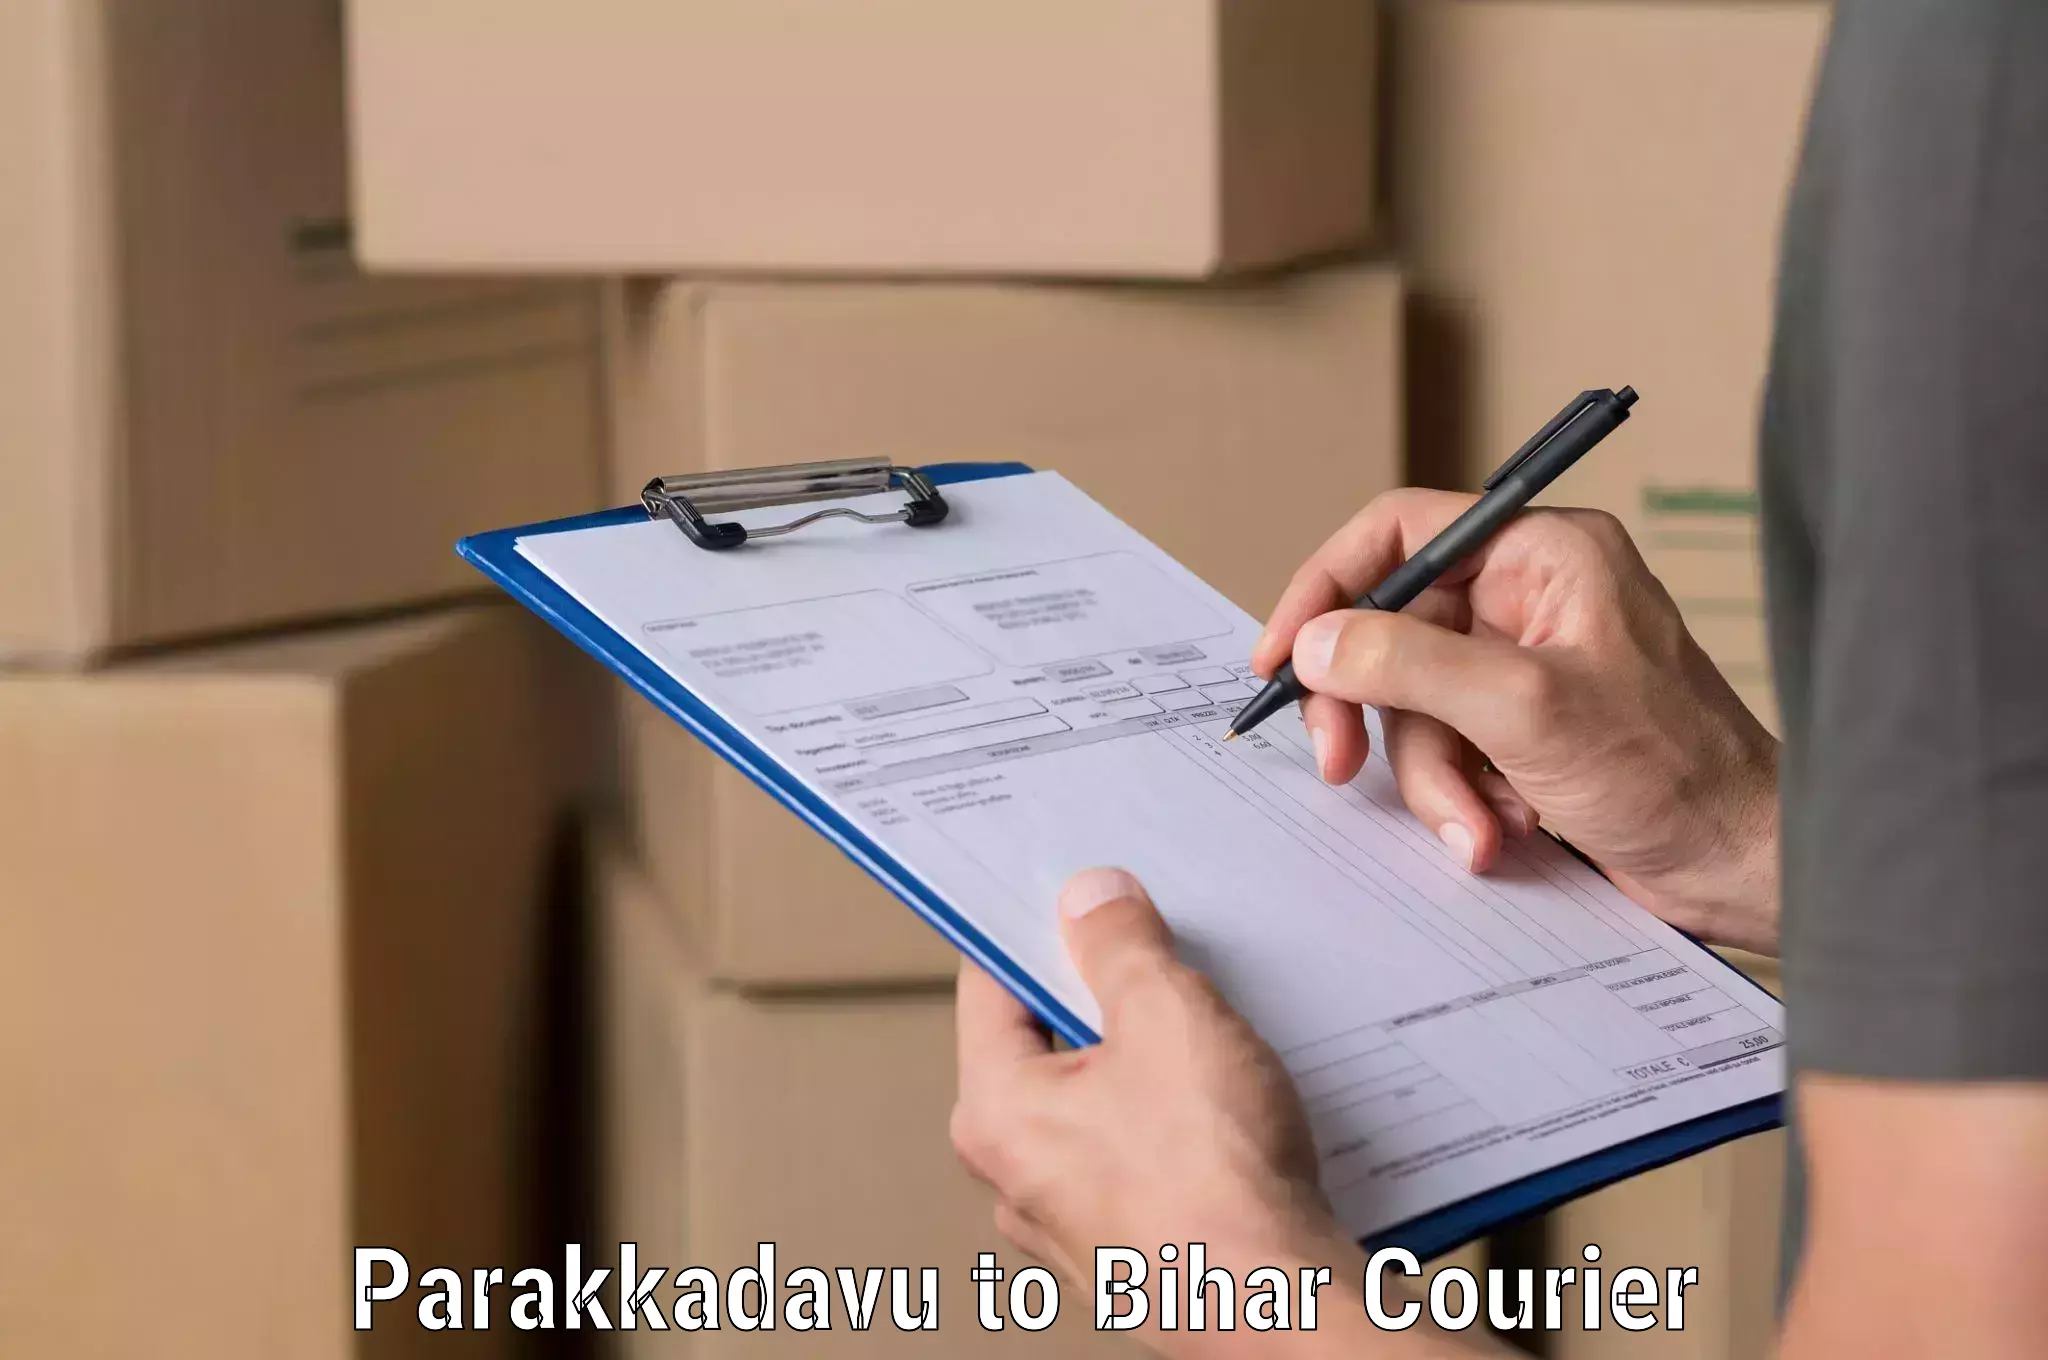 Urban courier service Parakkadavu to Brahmapur